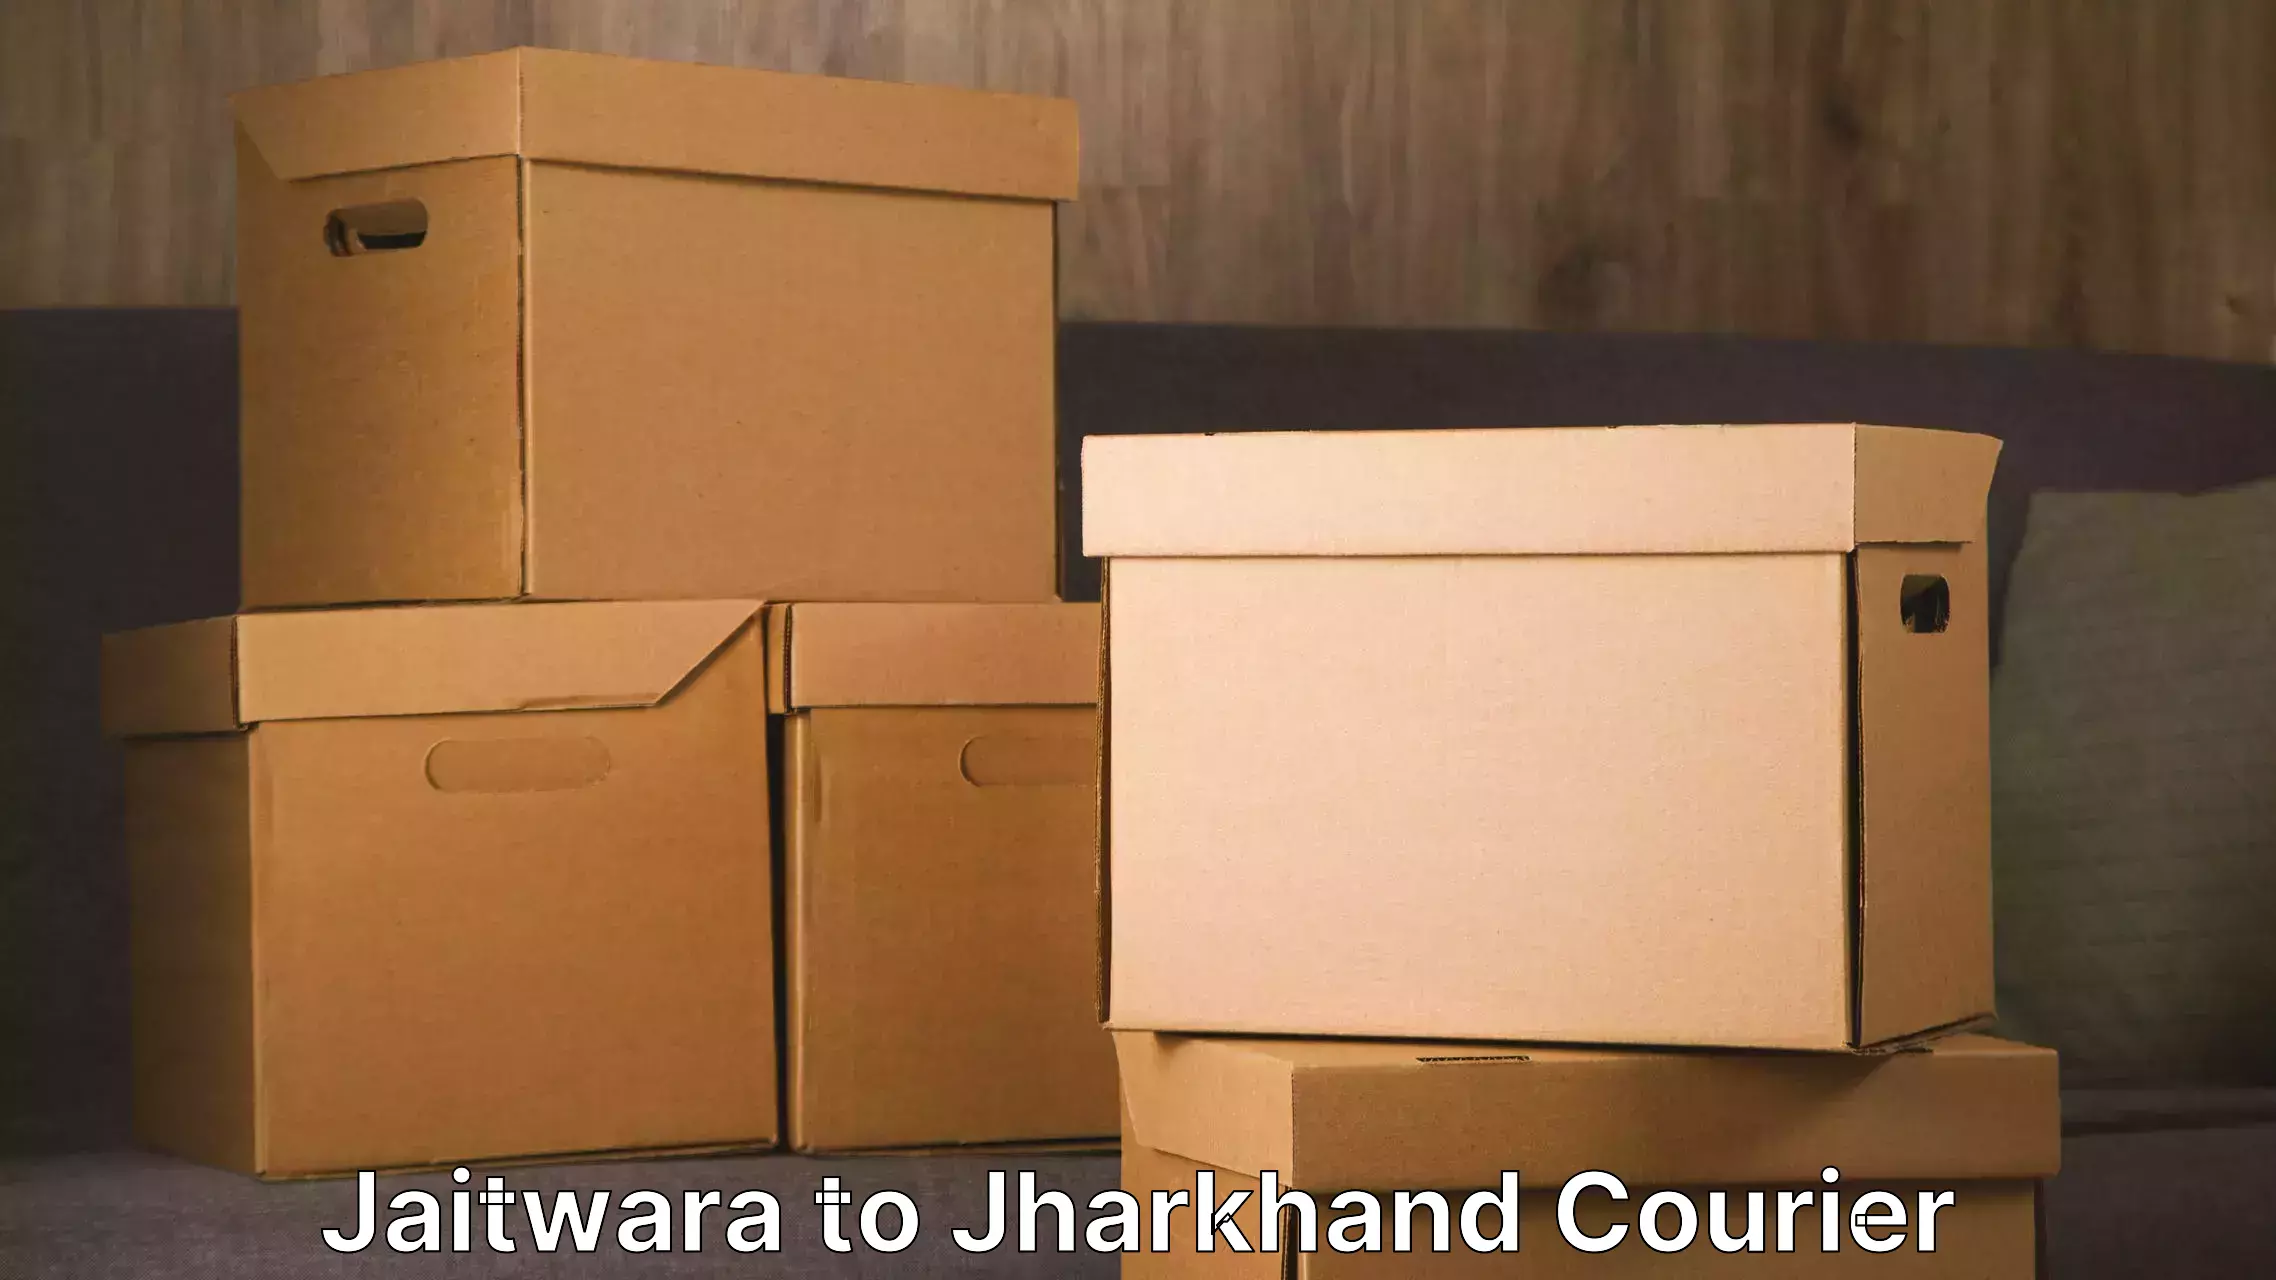 Professional furniture movers Jaitwara to Patan Palamu